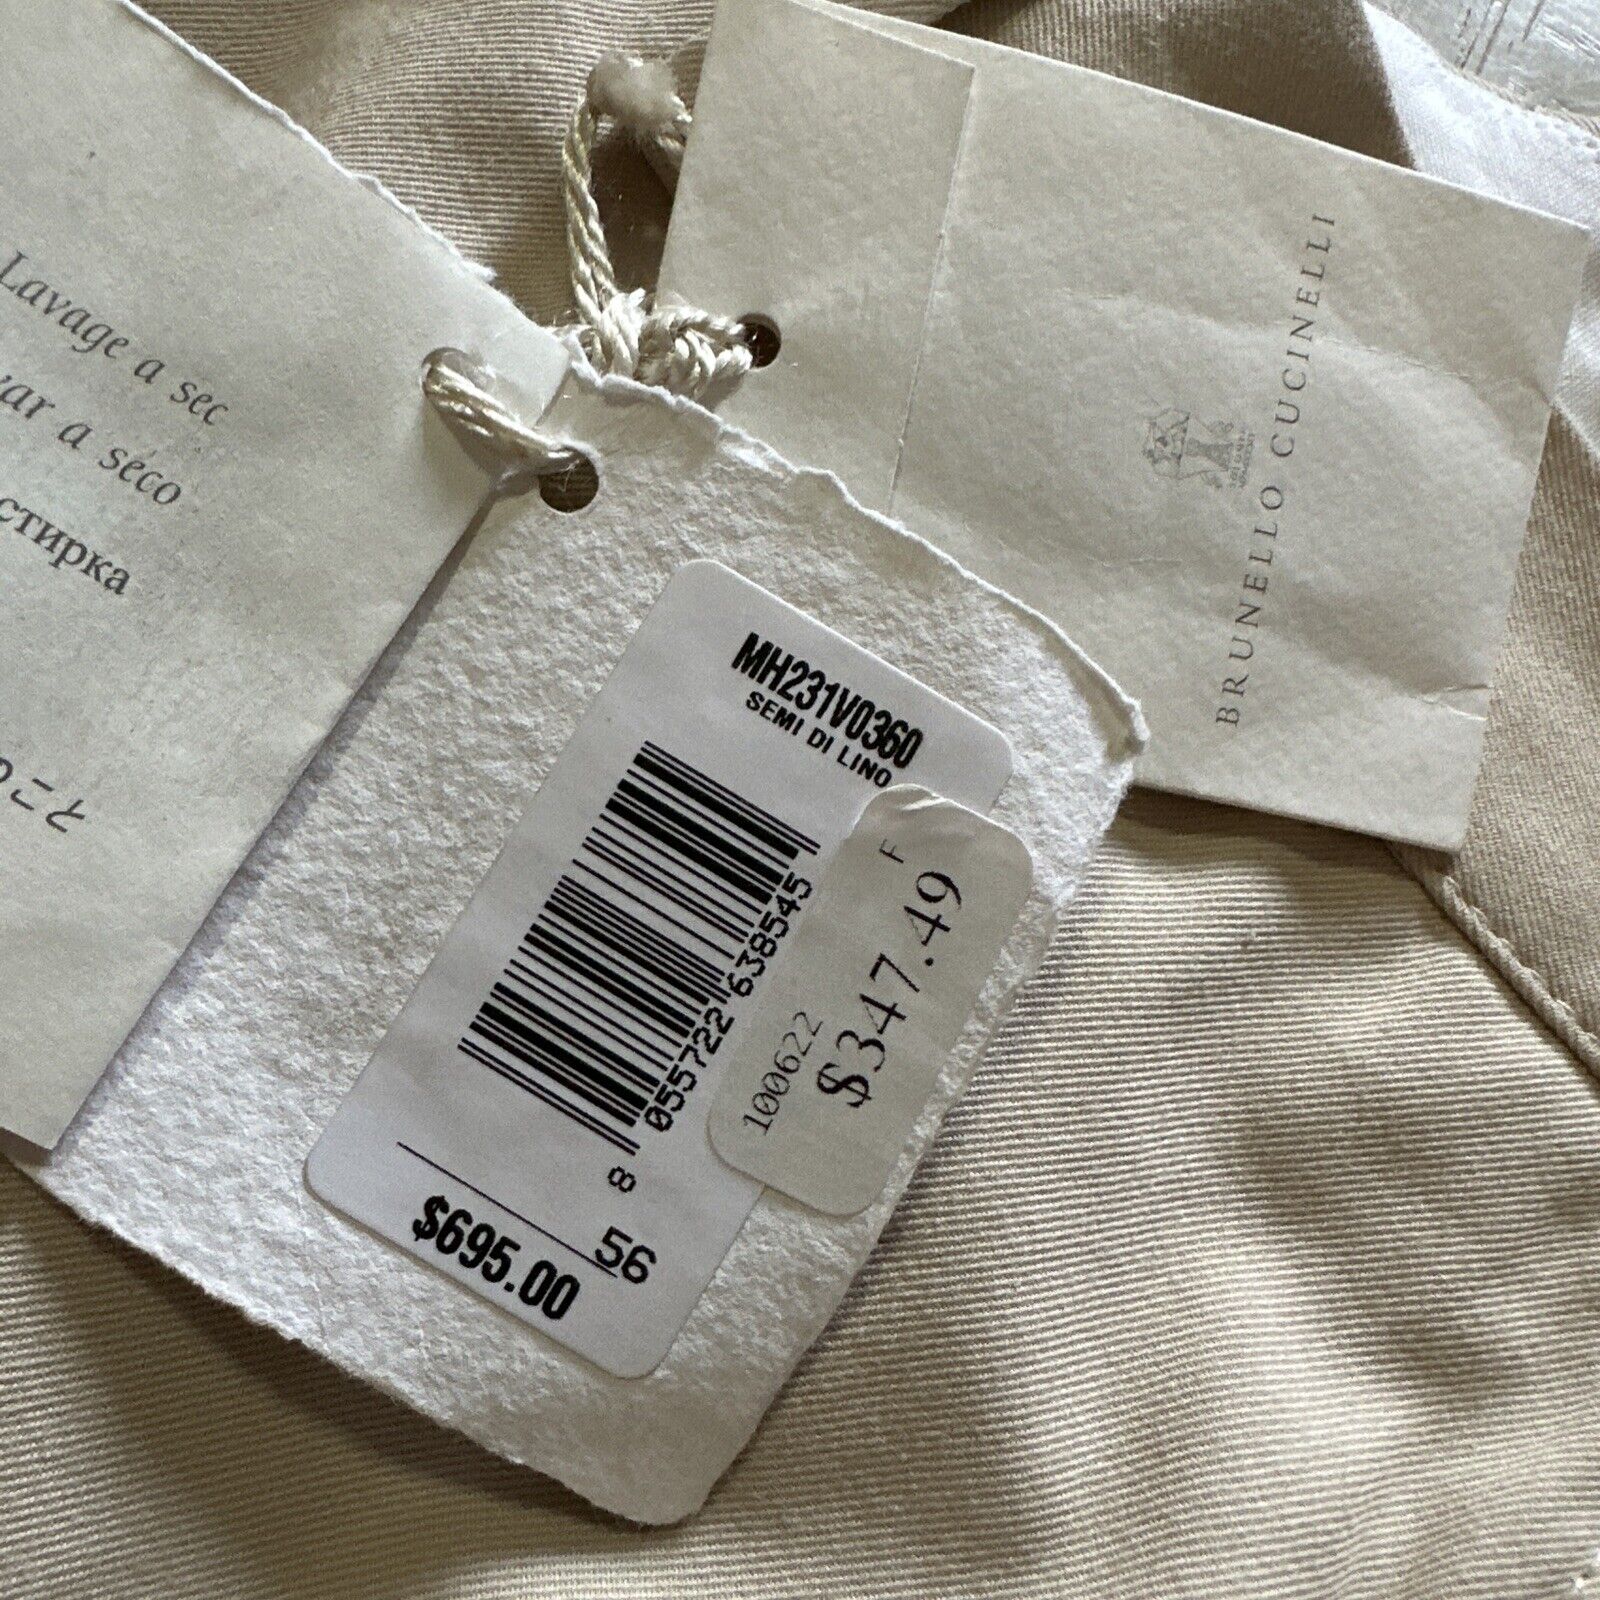 NWT $695 Brunello Cucinelli Men’s Short Pants Ivory 40 US/56 Eu